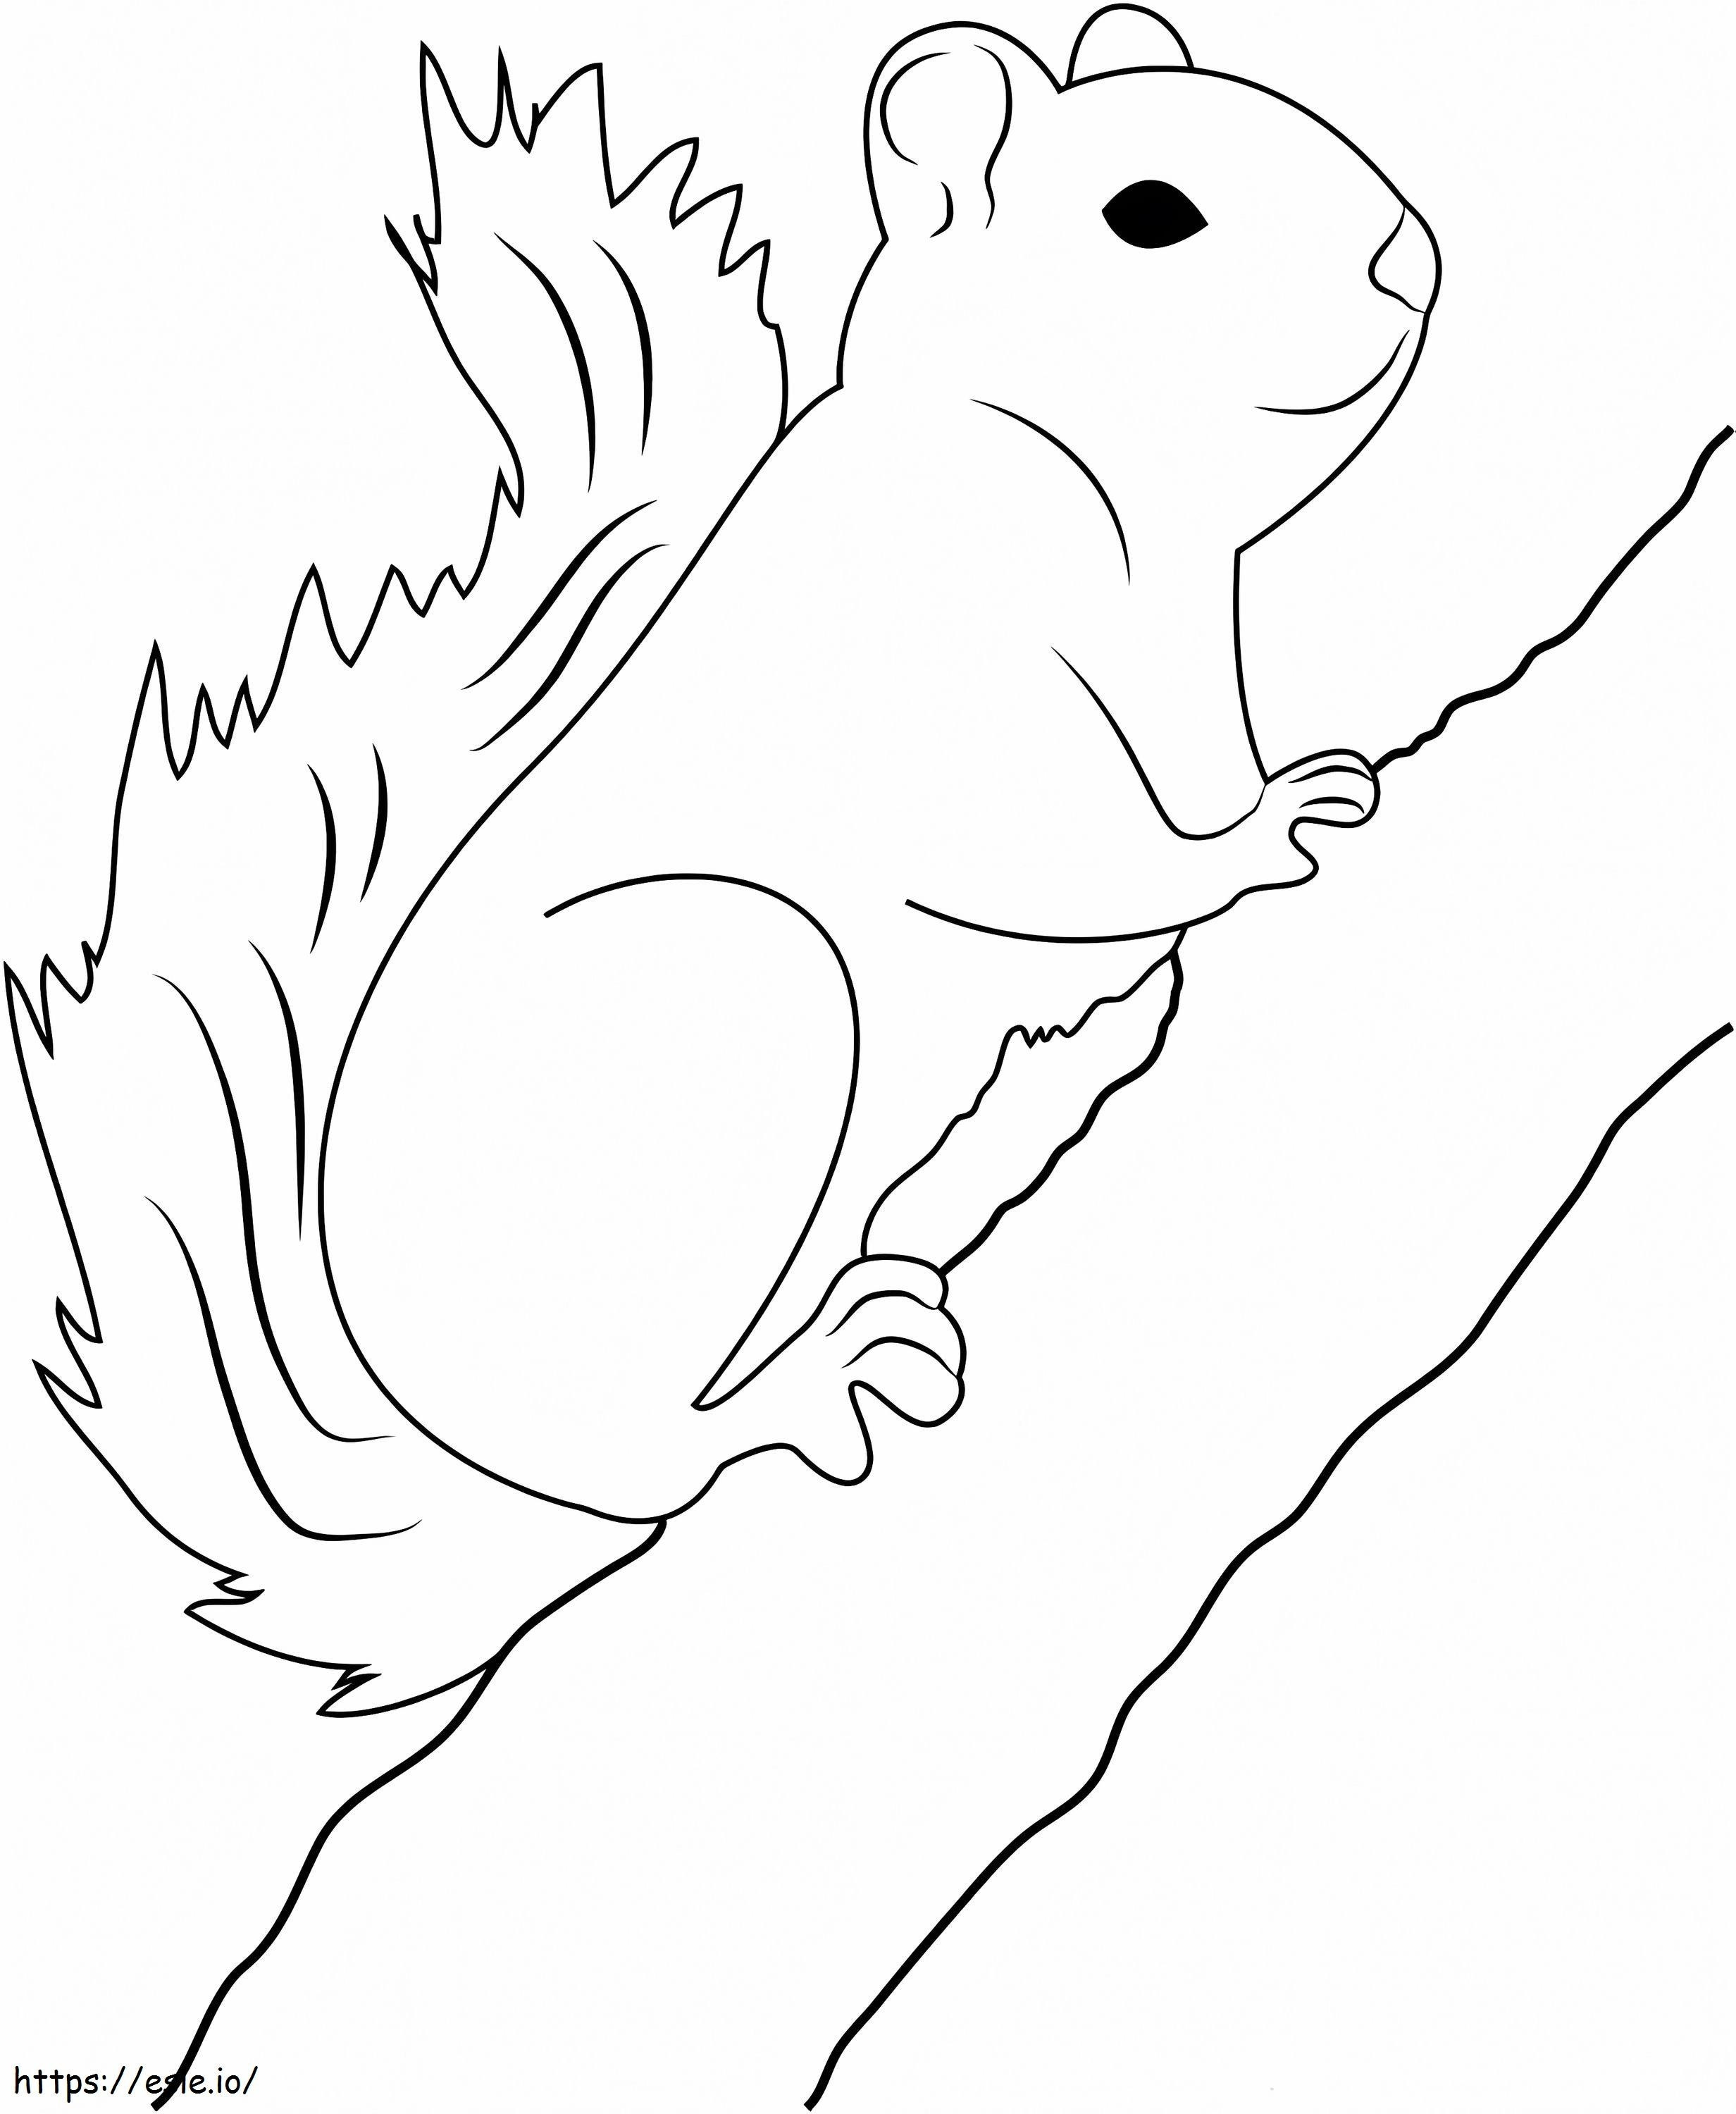 Eichhörnchen klettert auf einen Ast ausmalbilder